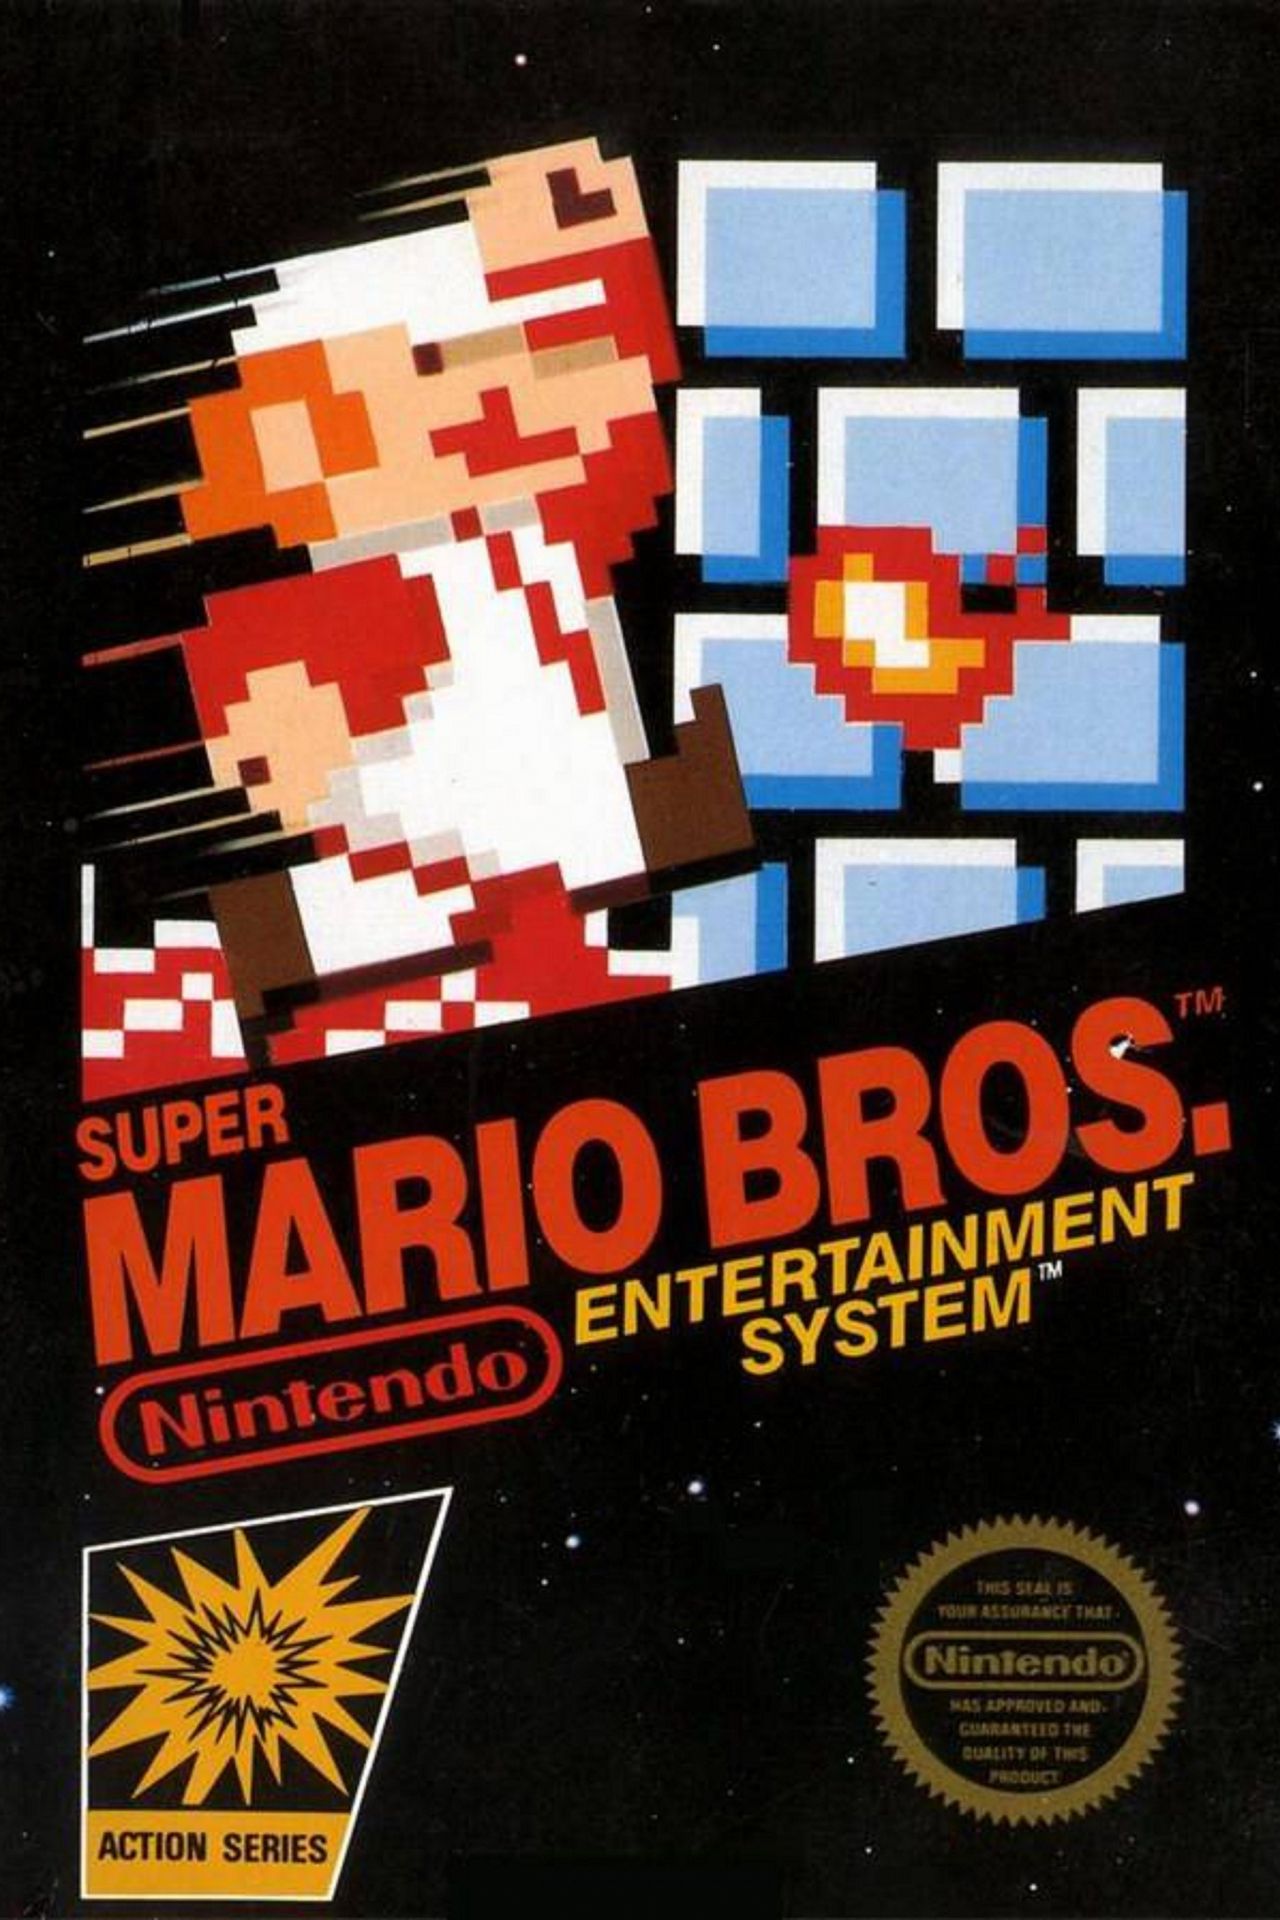 Super Mario Bros original game poster